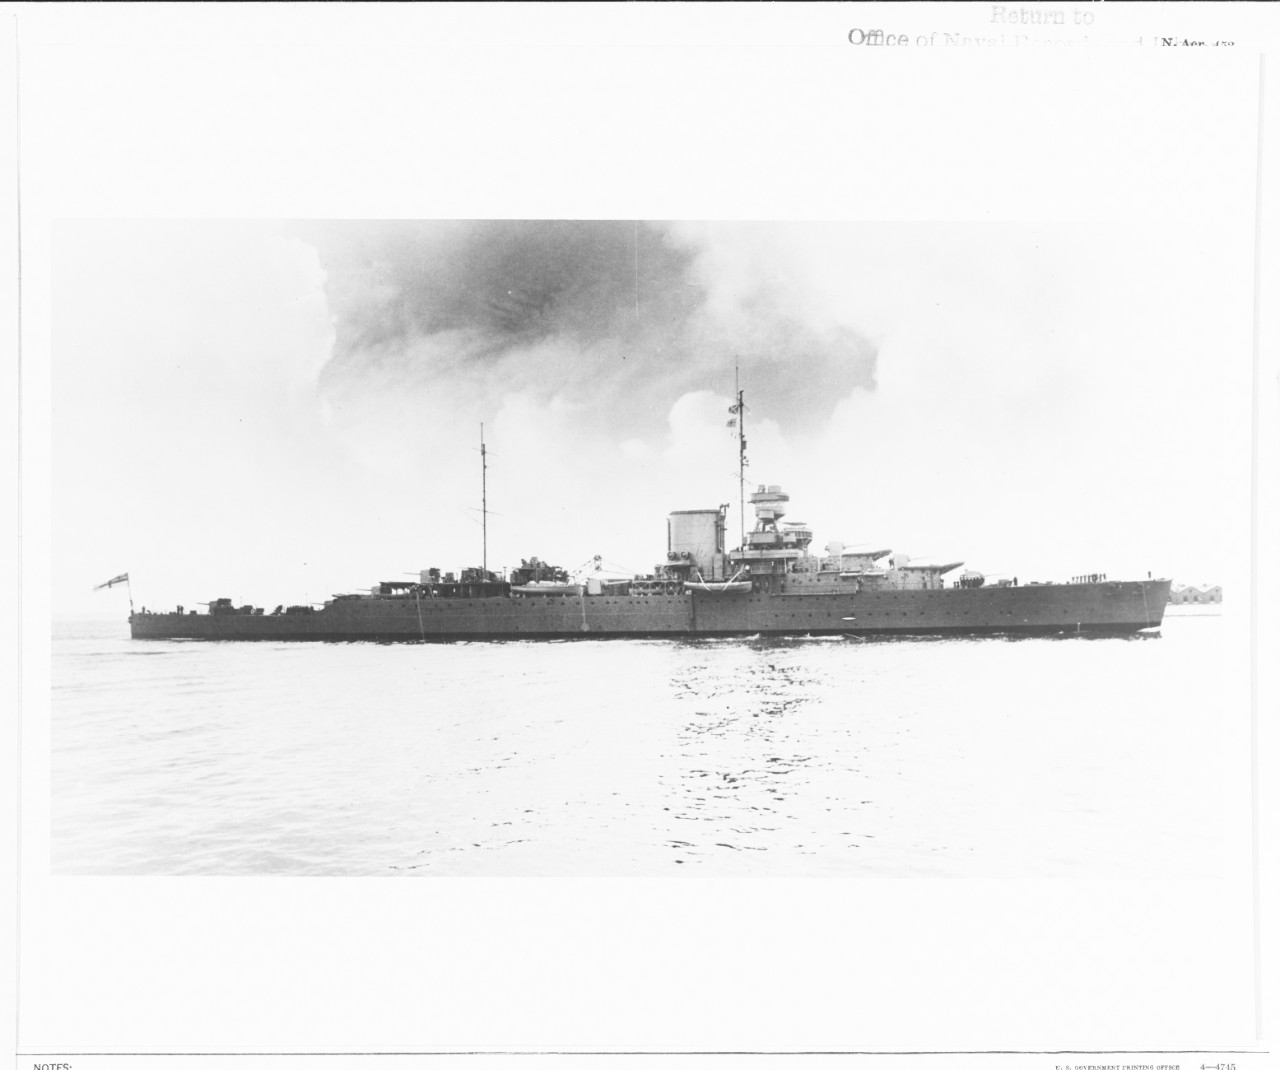 HMS EFFINGHAM (British Cruiser, 1921)